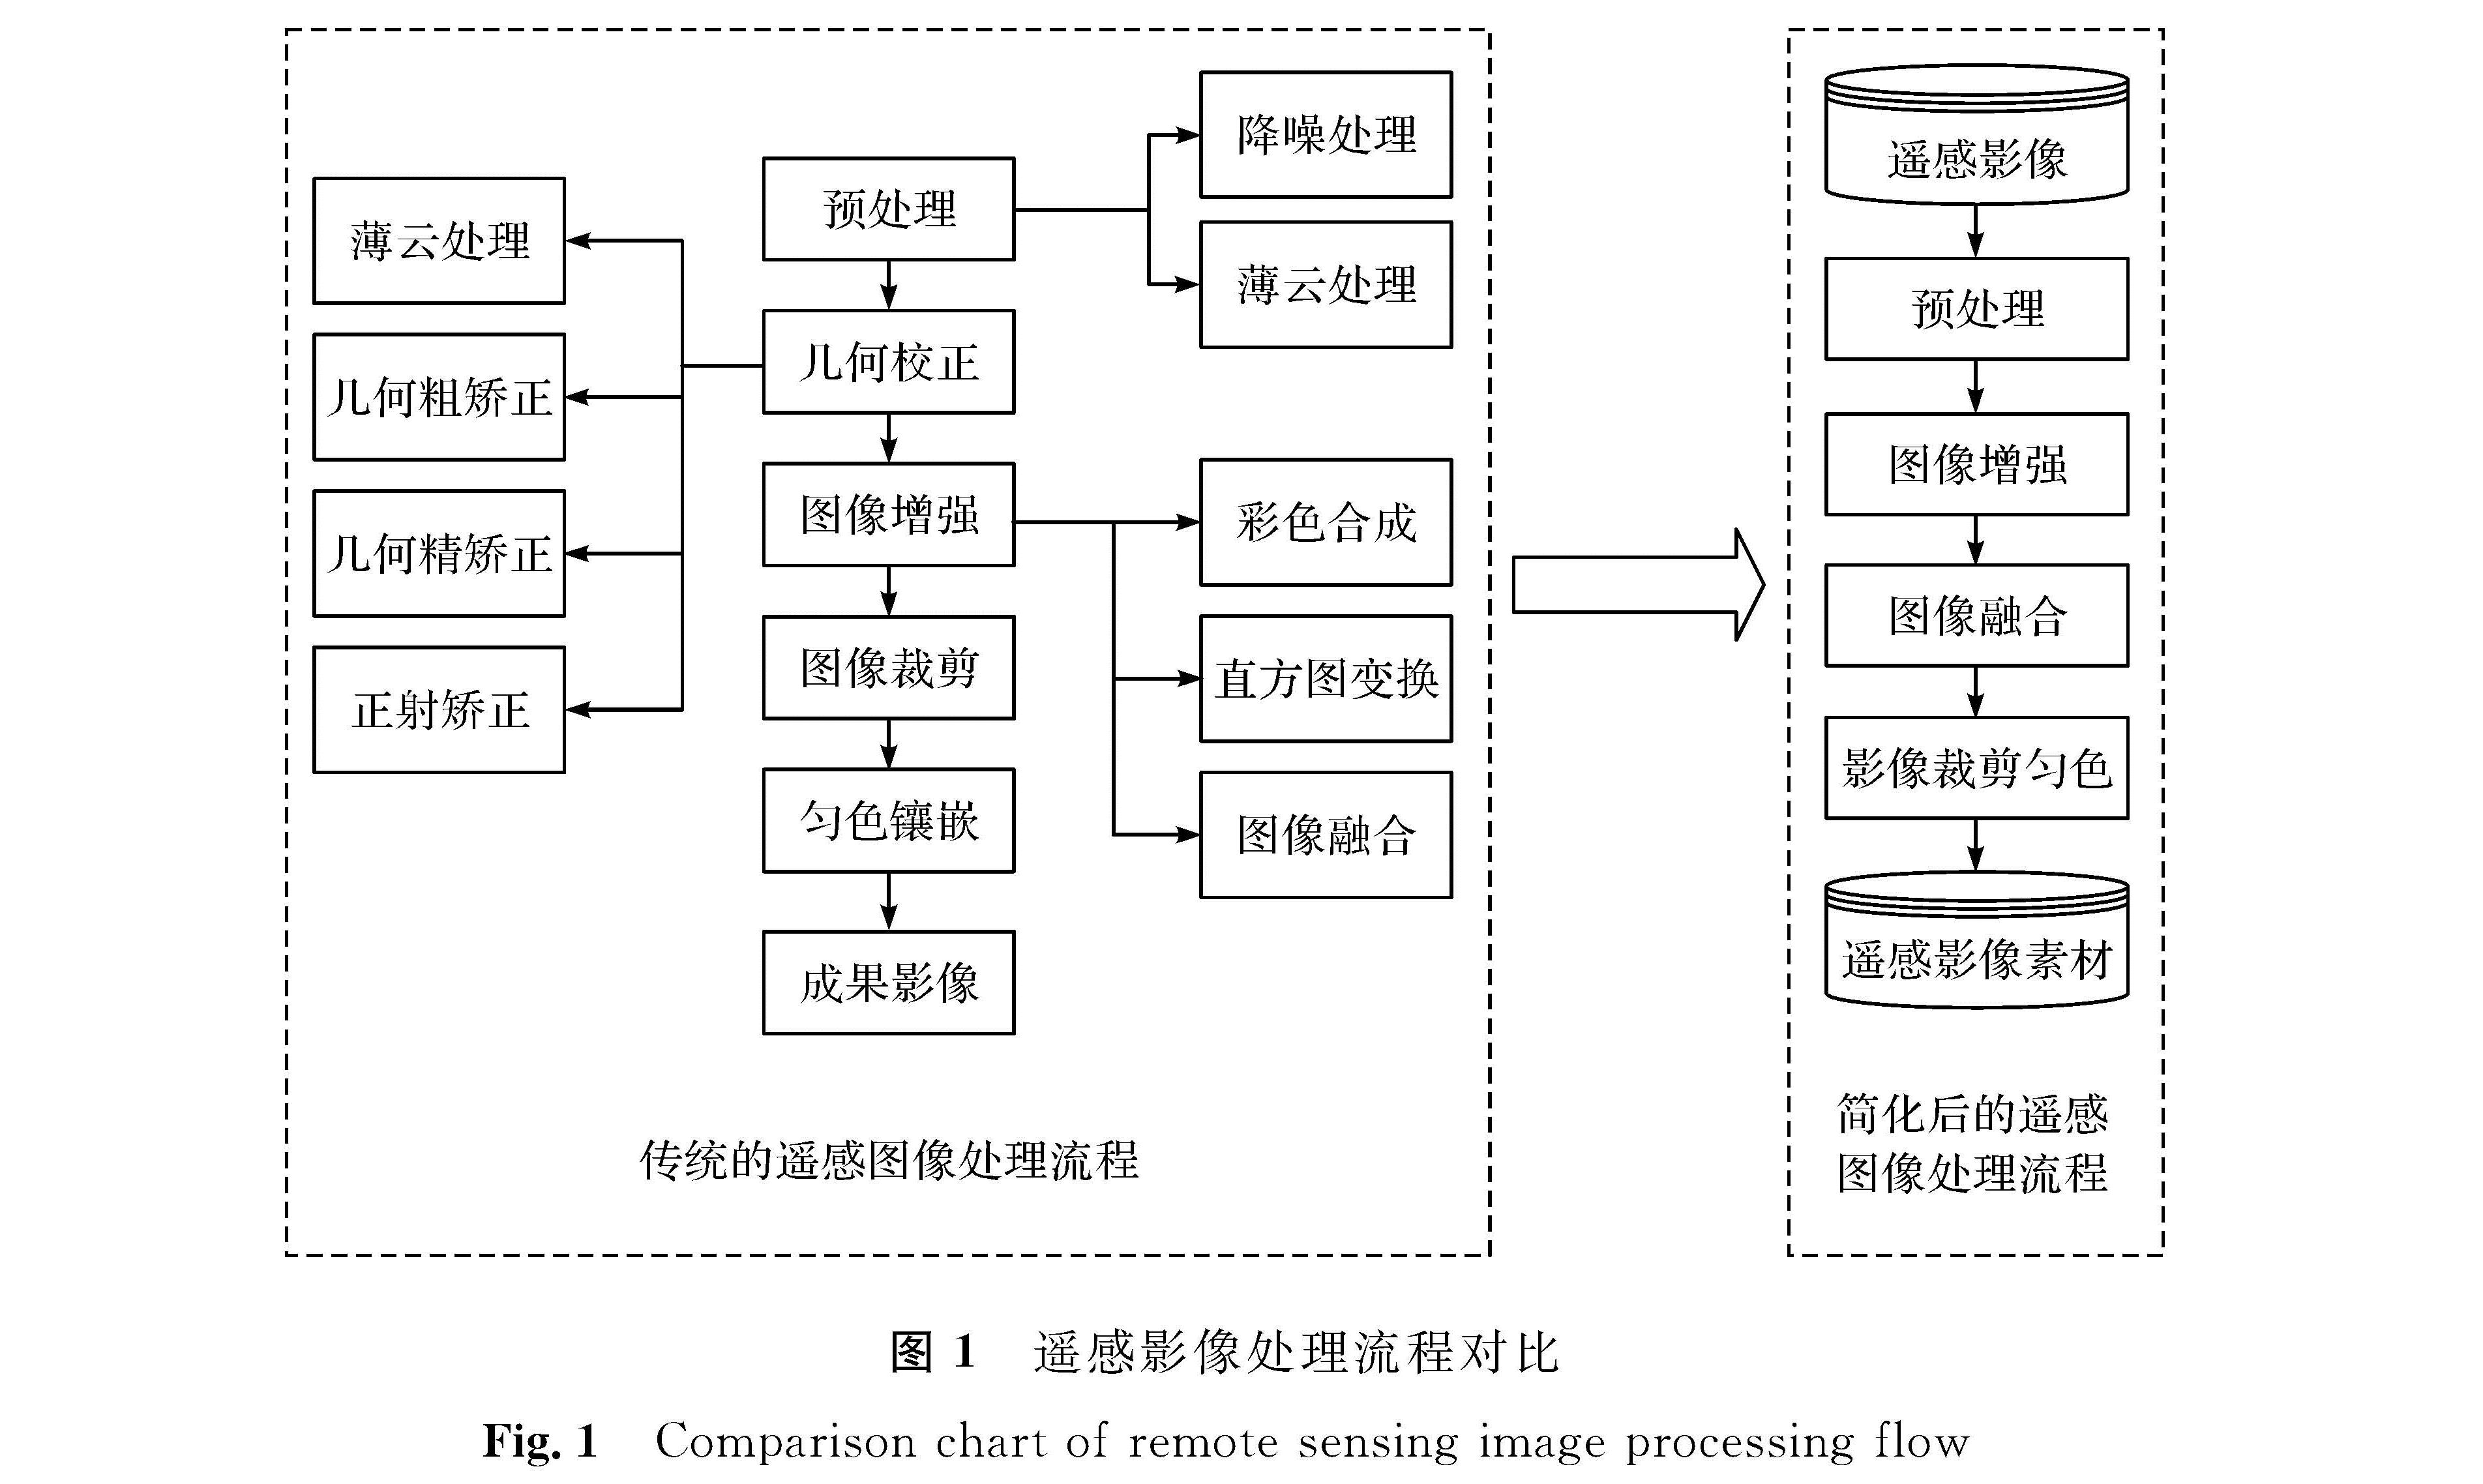 图1 遥感影像处理流程对比<br/>Fig.1 Comparison chart of remote sensing image processing flow